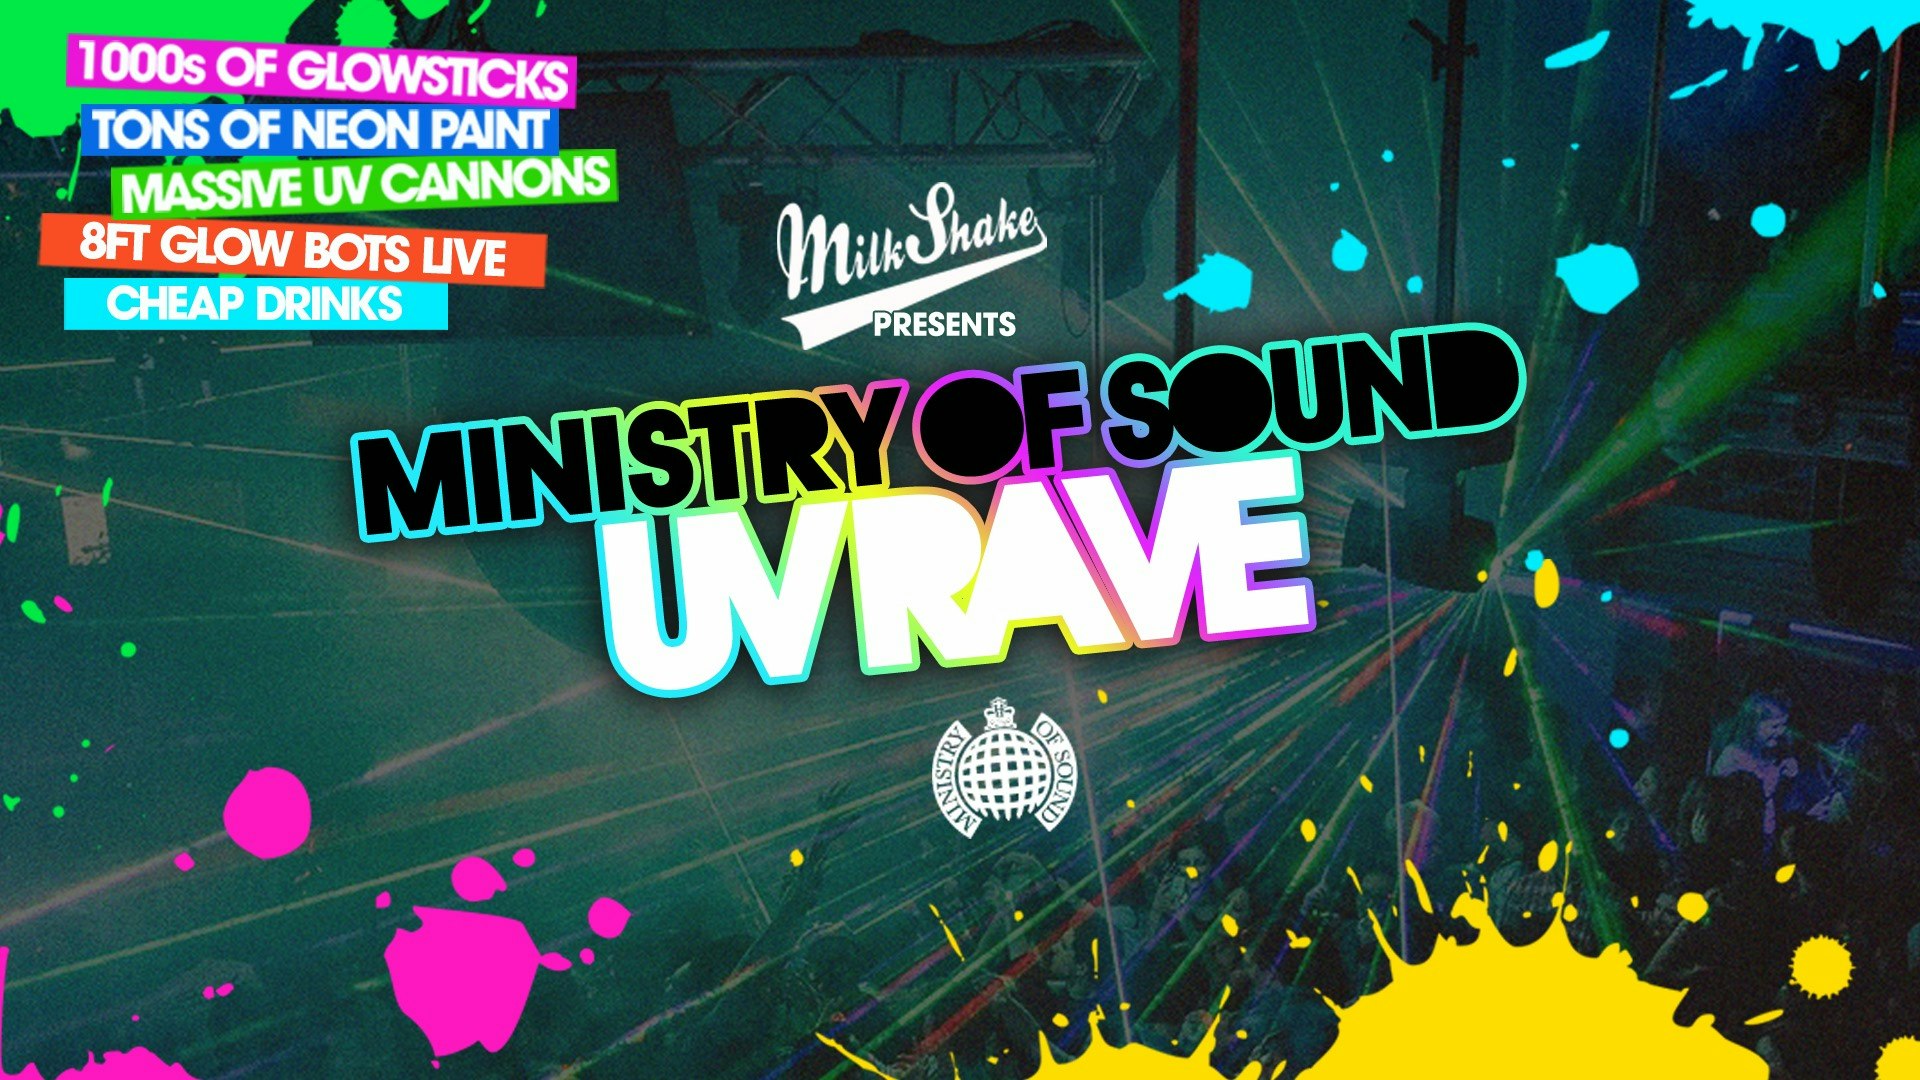 The Milkshake, Ministry of Sound UV Rave ⚡